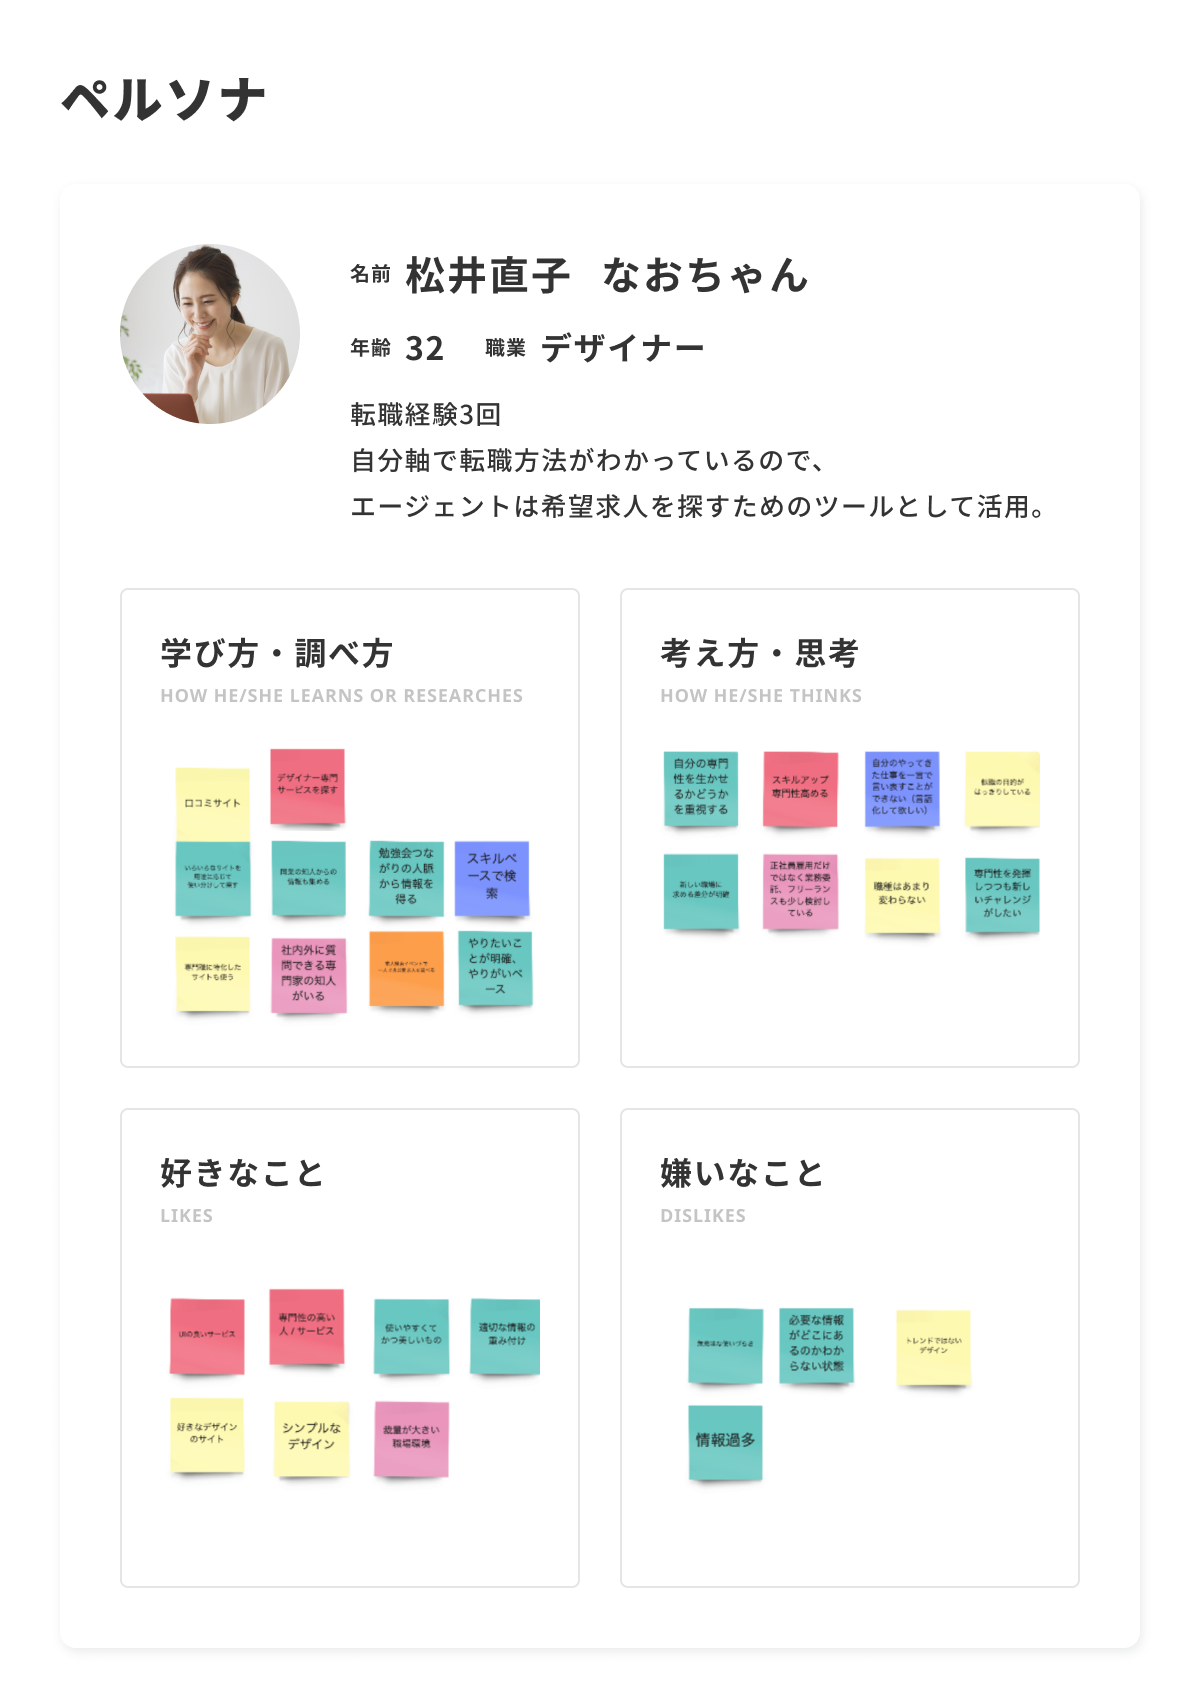 ペルソナである松井直子さんの学び方・調べ方・好きなことなどの情報が記載されている。